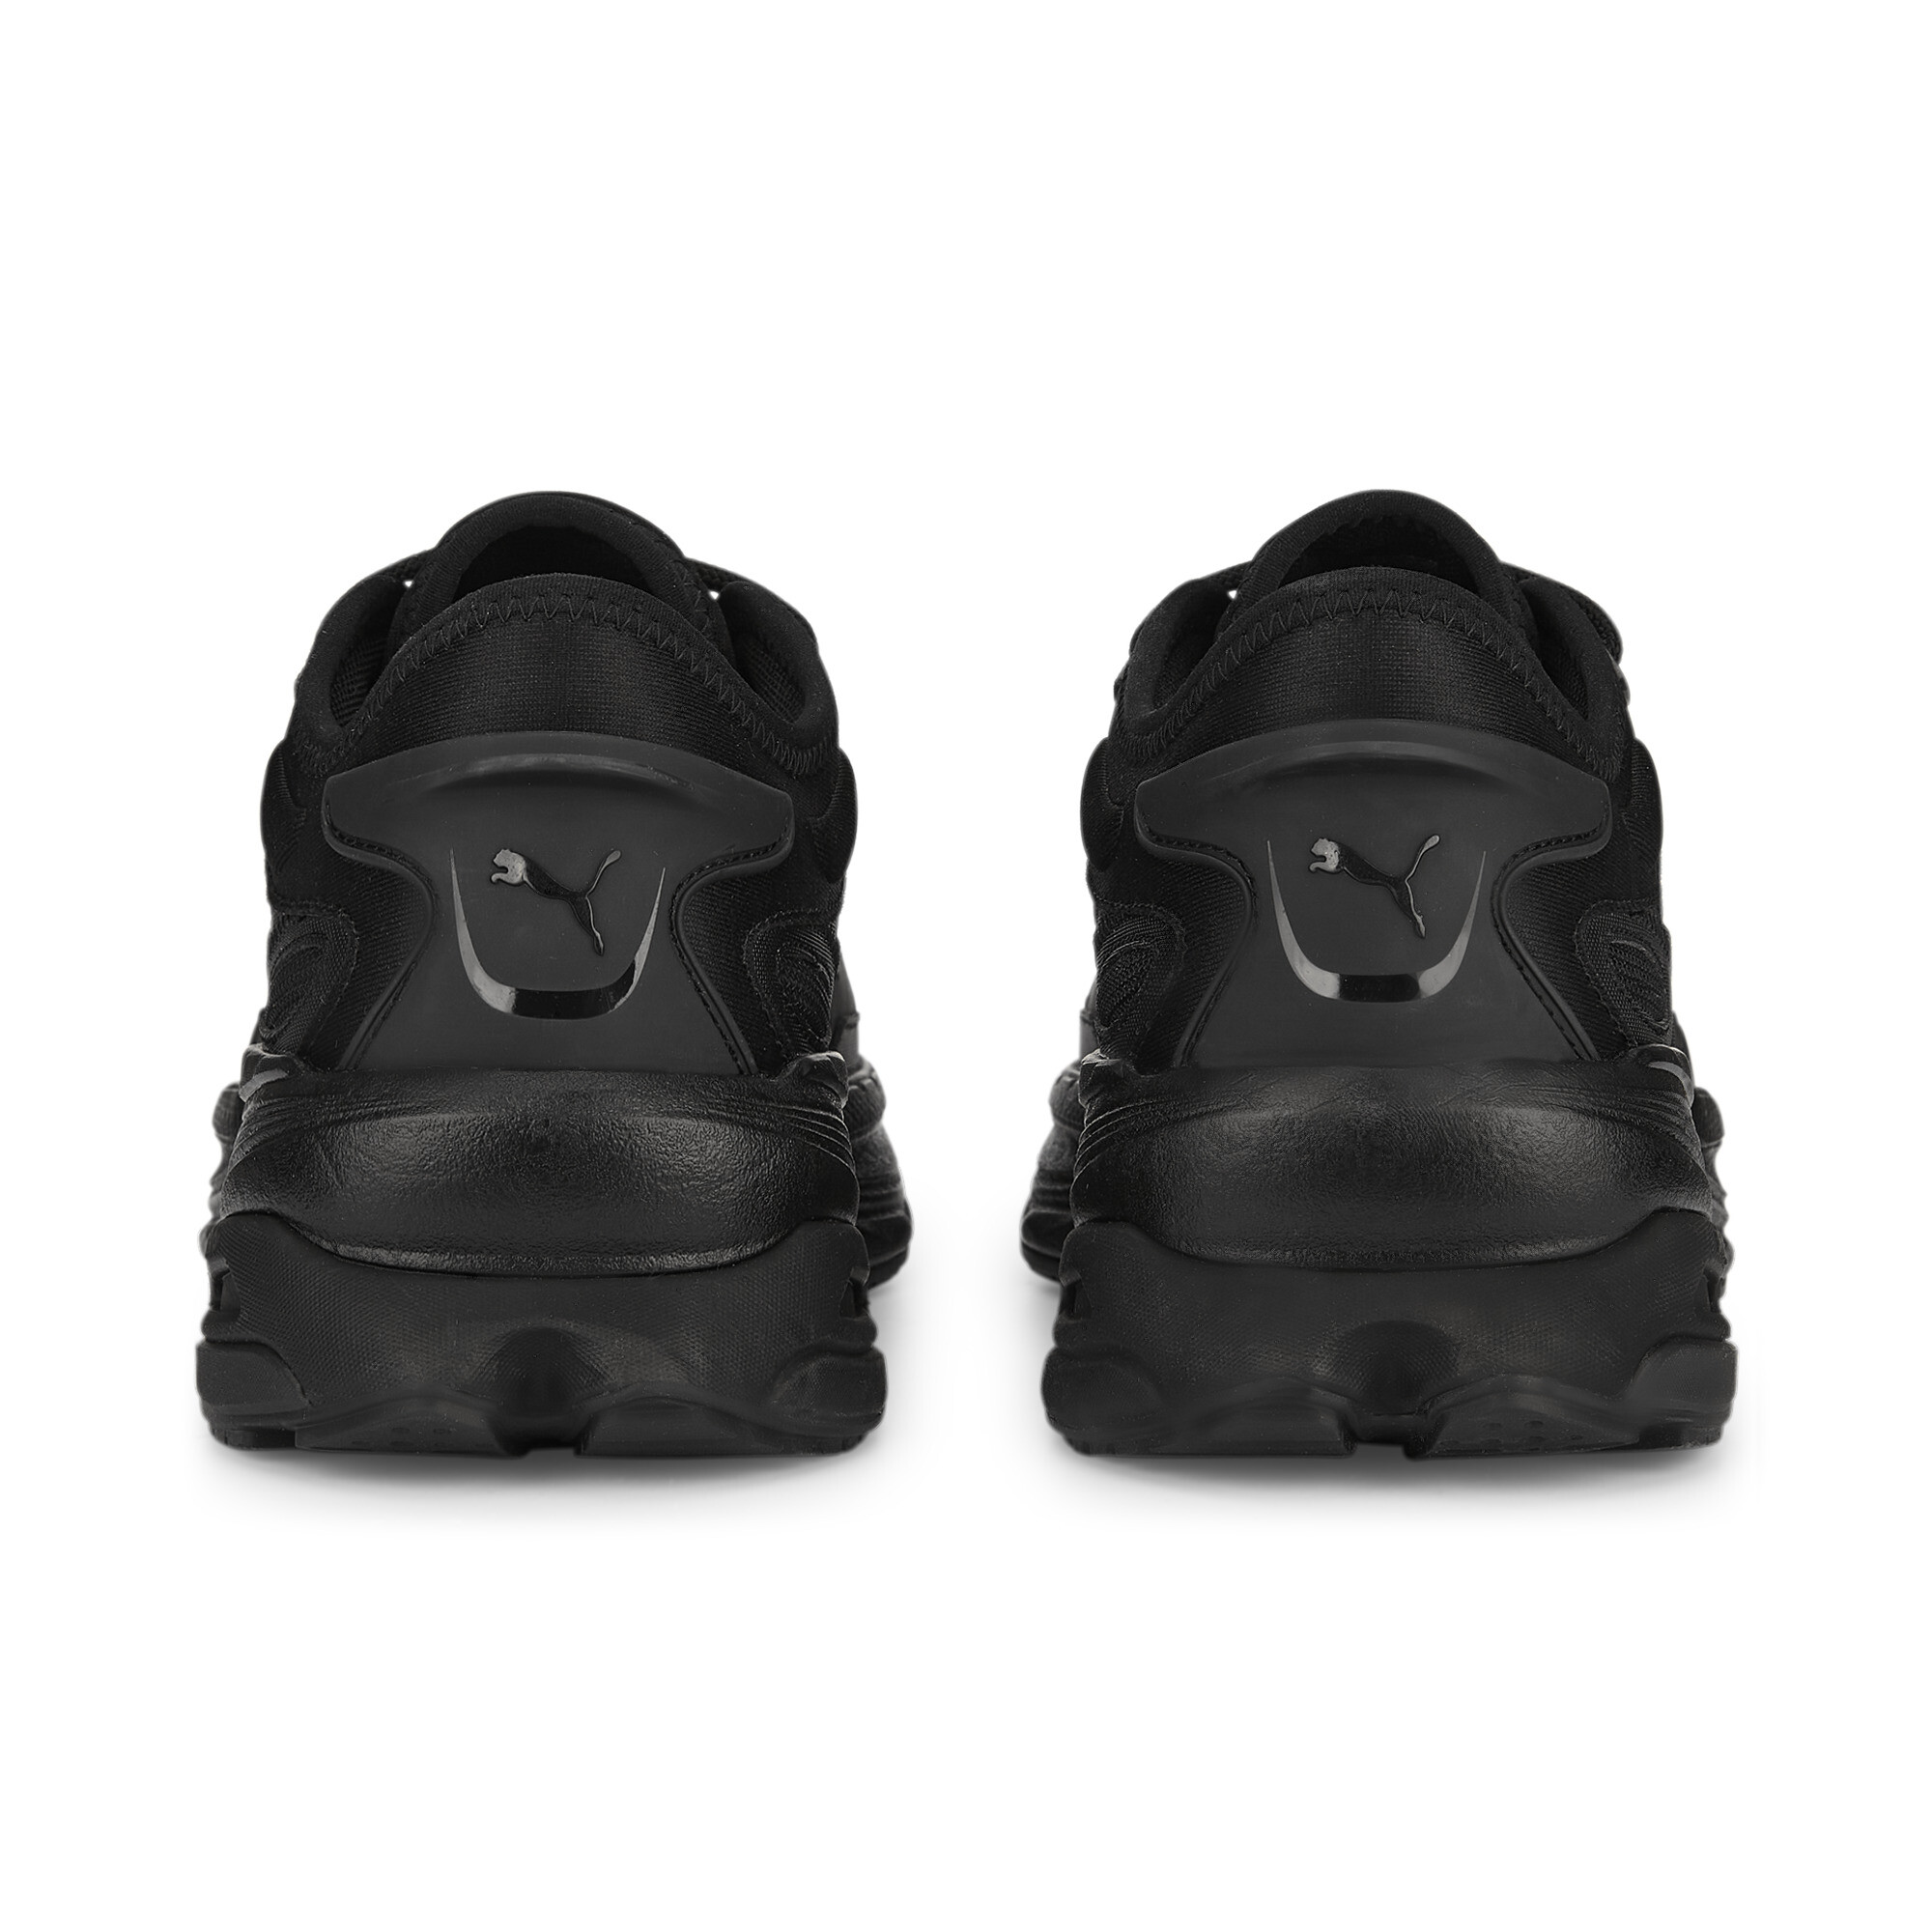 Men's PUMA Extent Nitro Mono Sneakers In Black, Size EU 40.5